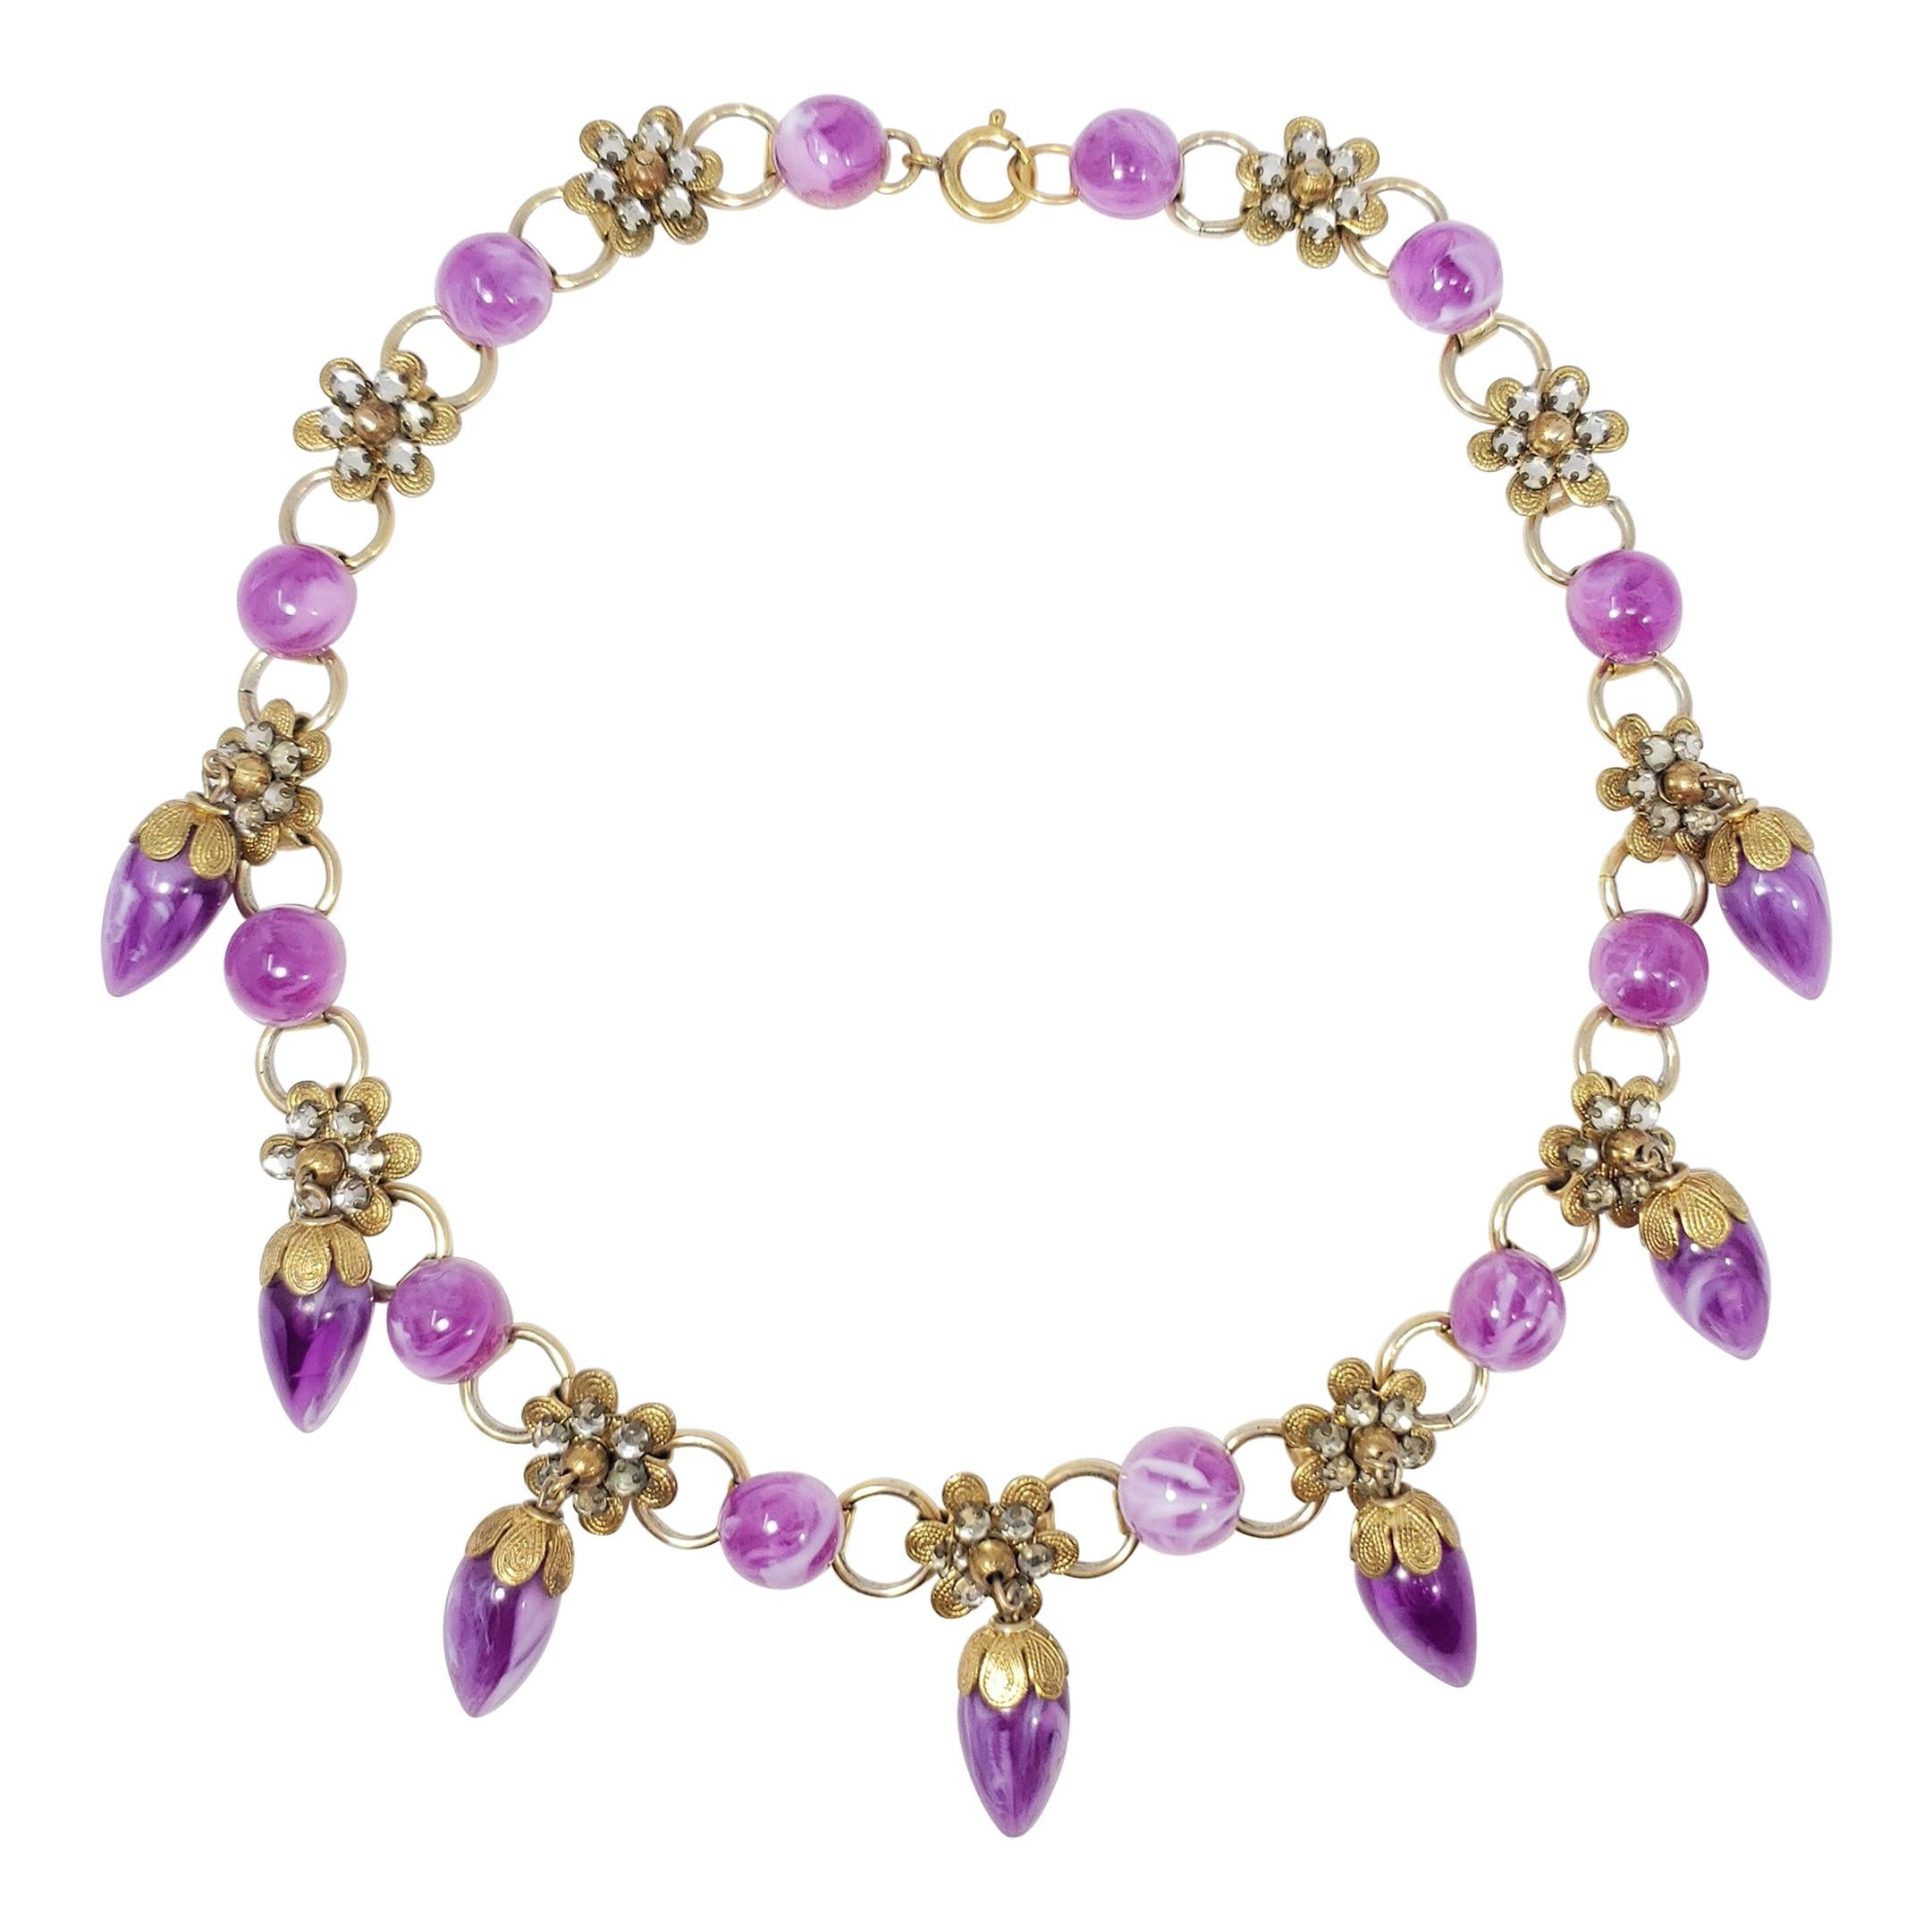 Retro Marbled Violet Dangling Crystal Flower Necklace, Gold